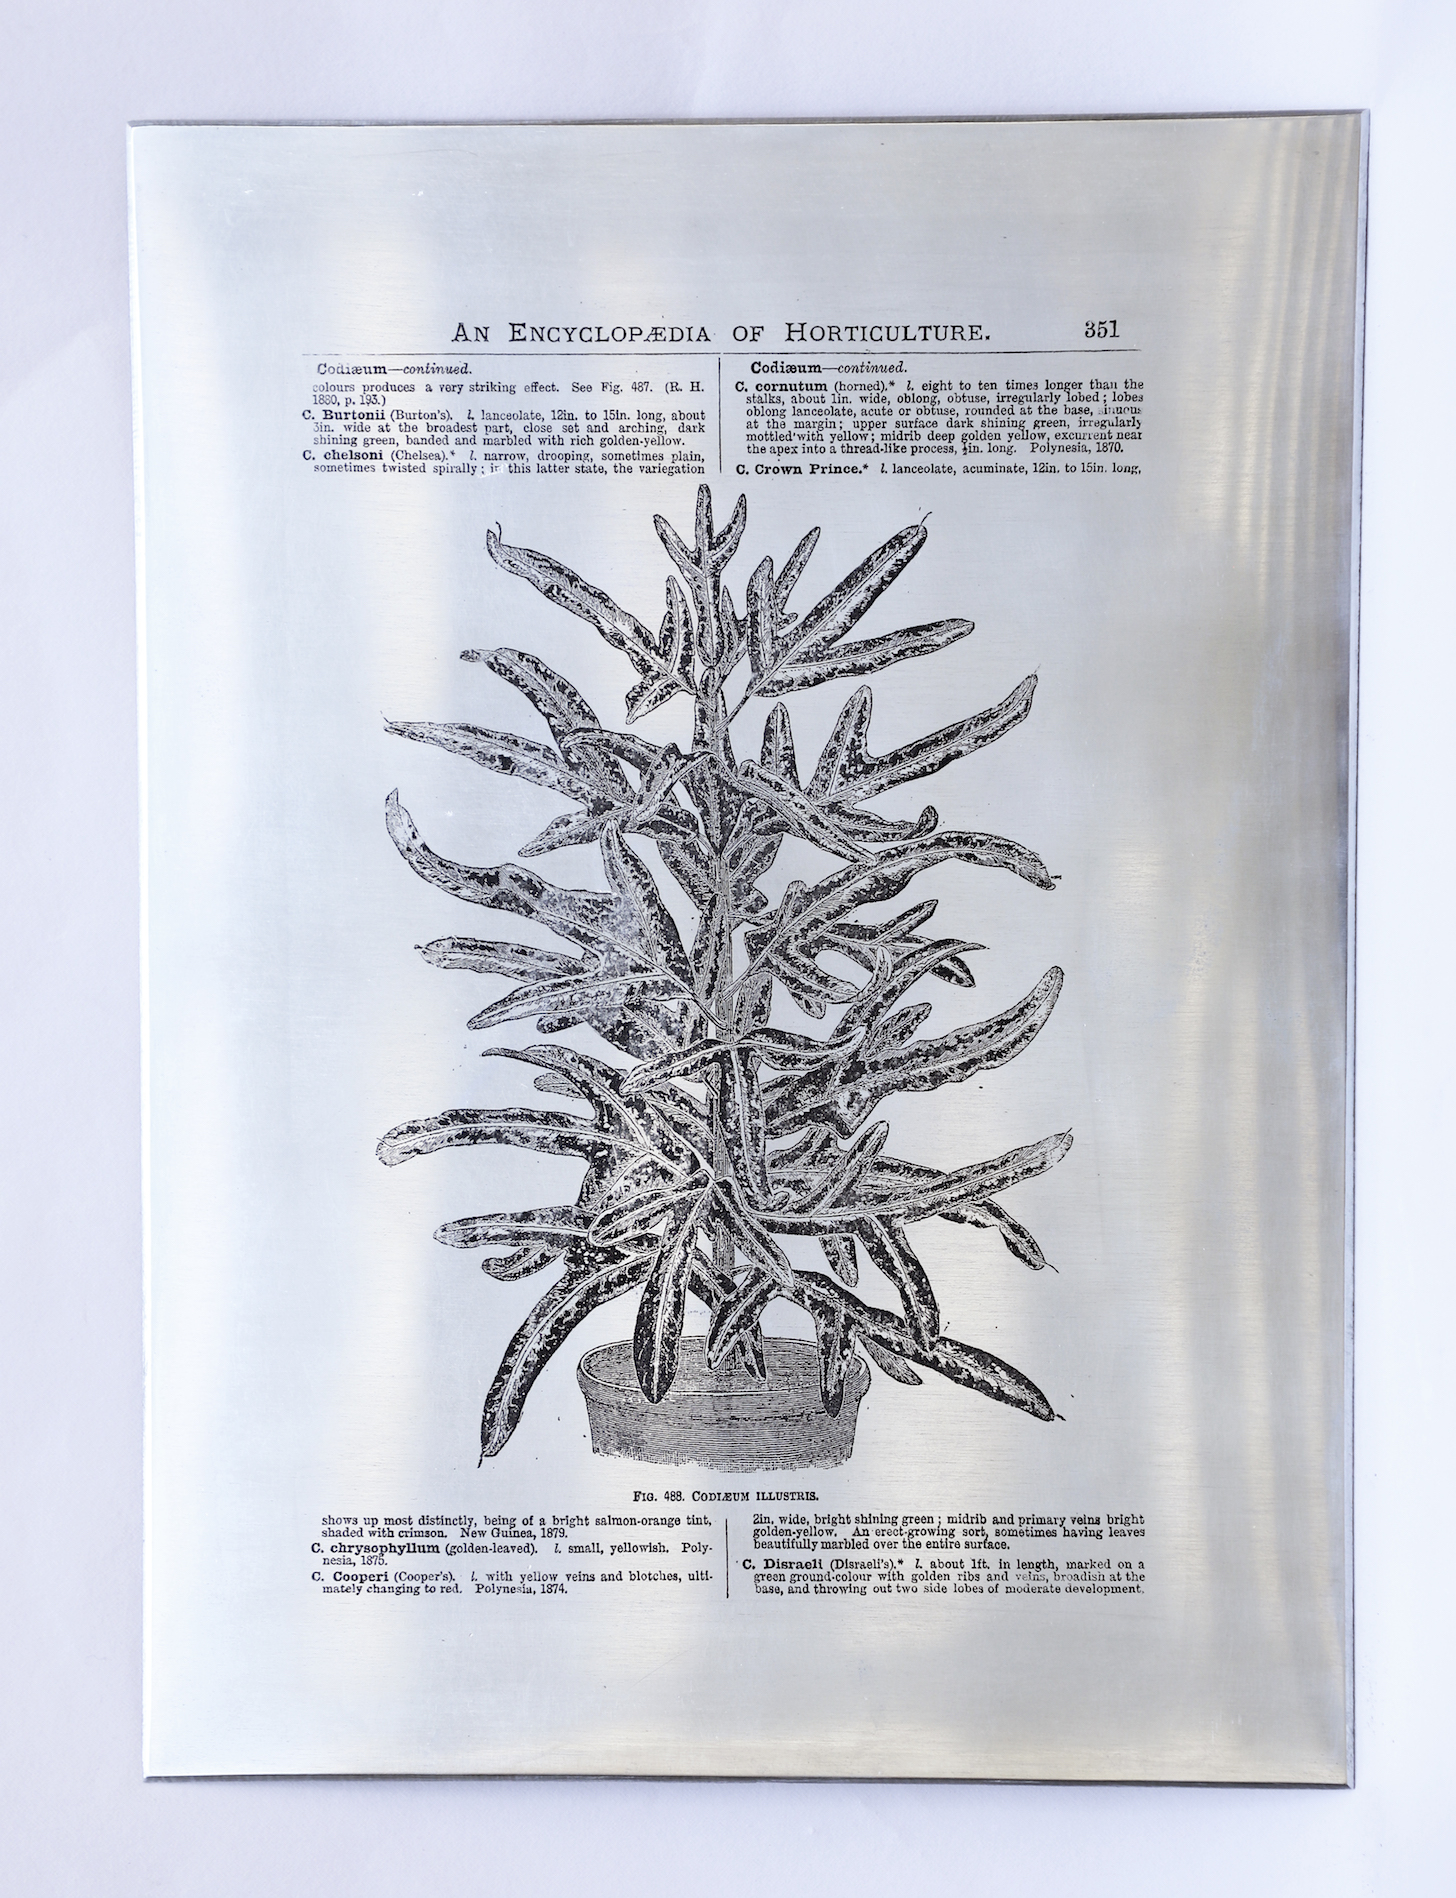 Heat Transfers on Zinc Plate by Sarasija Subramanian